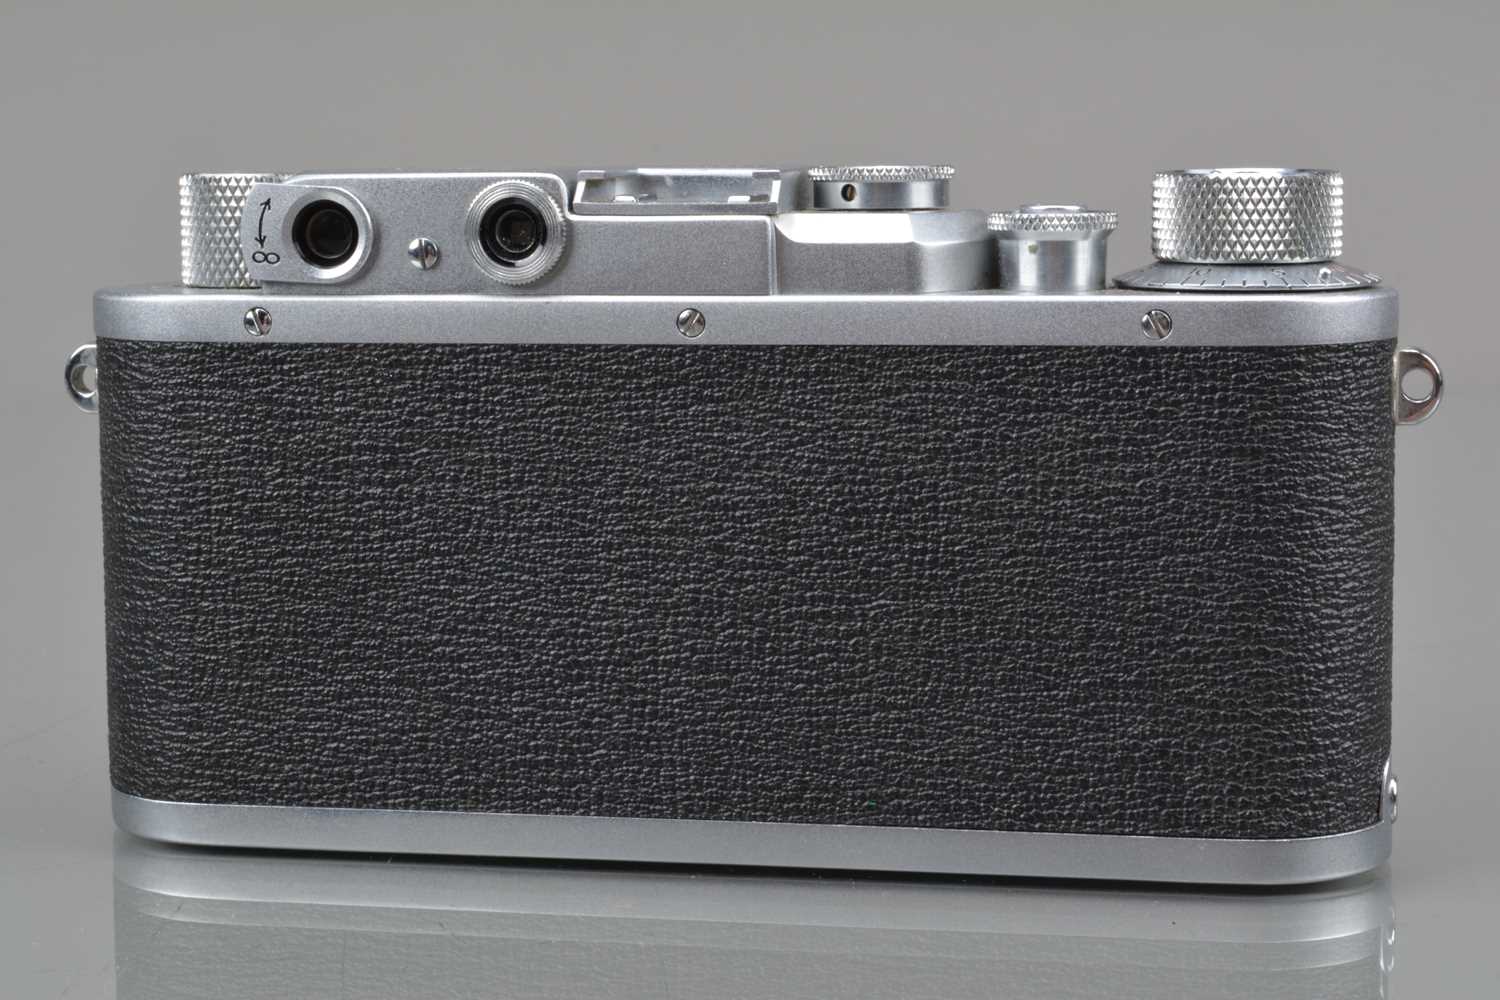 A Nicca 3-S Rangefinder Camera, - Image 2 of 3